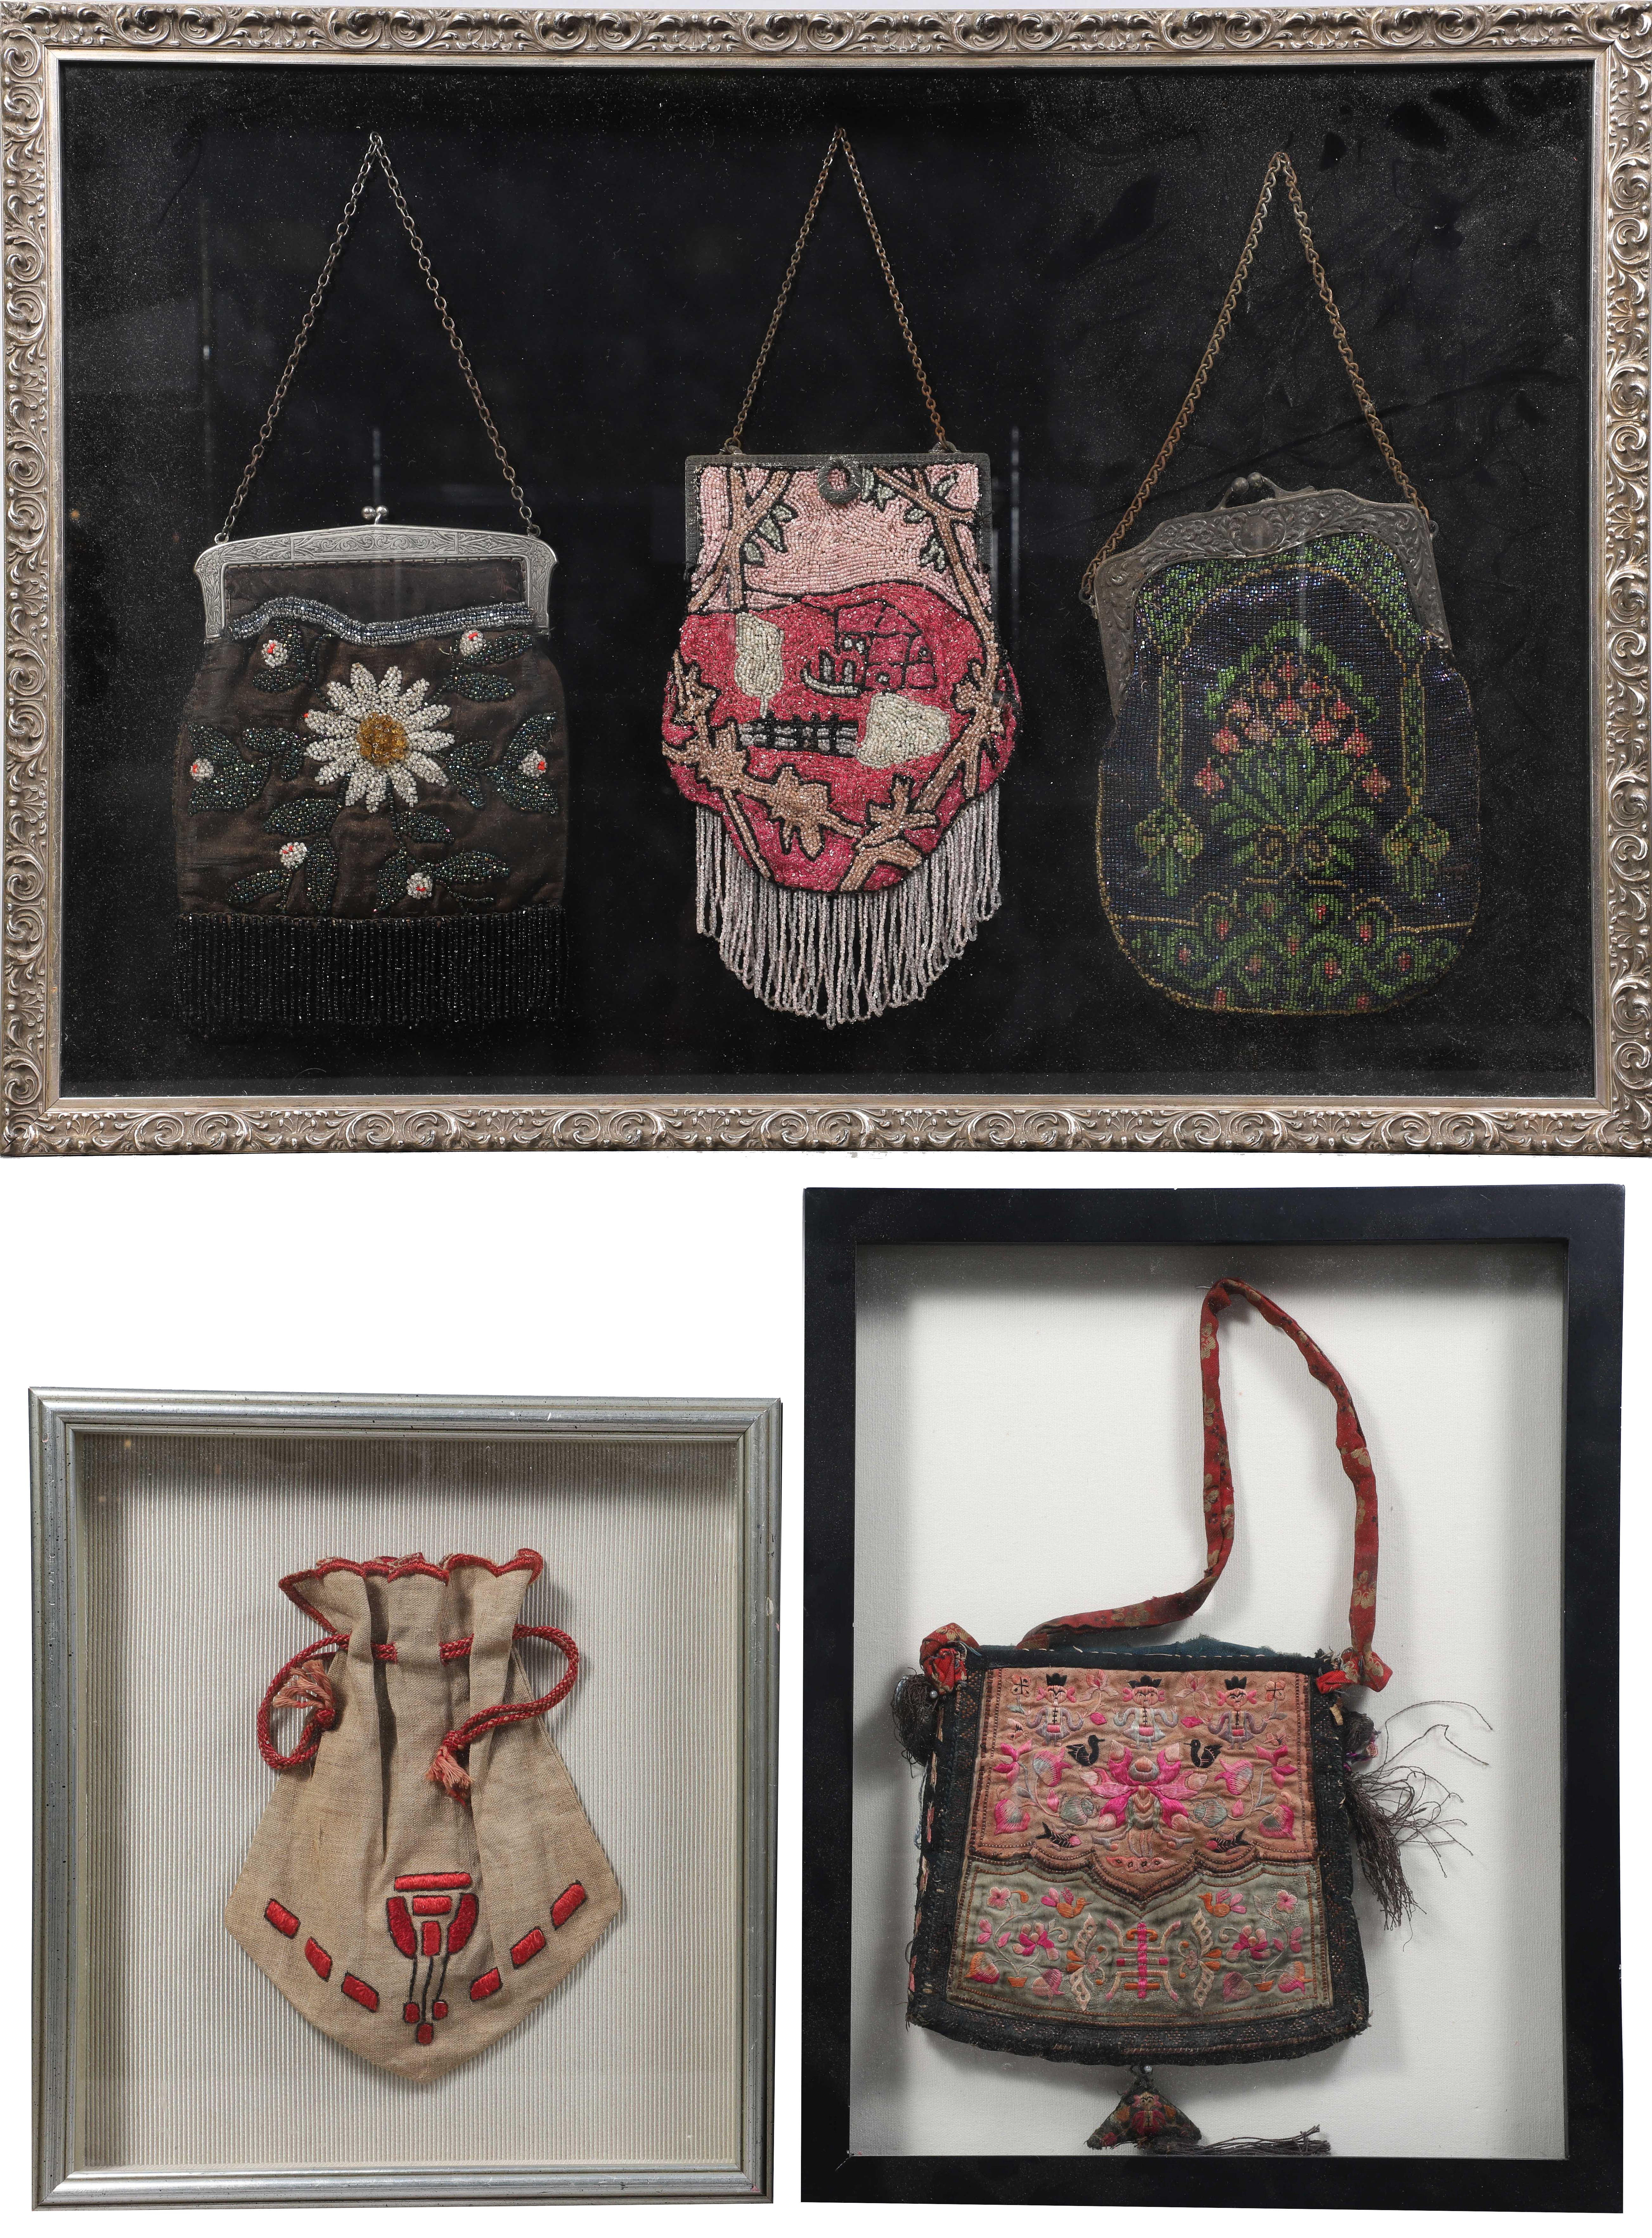  3 Framed antique purses to include 2e2139